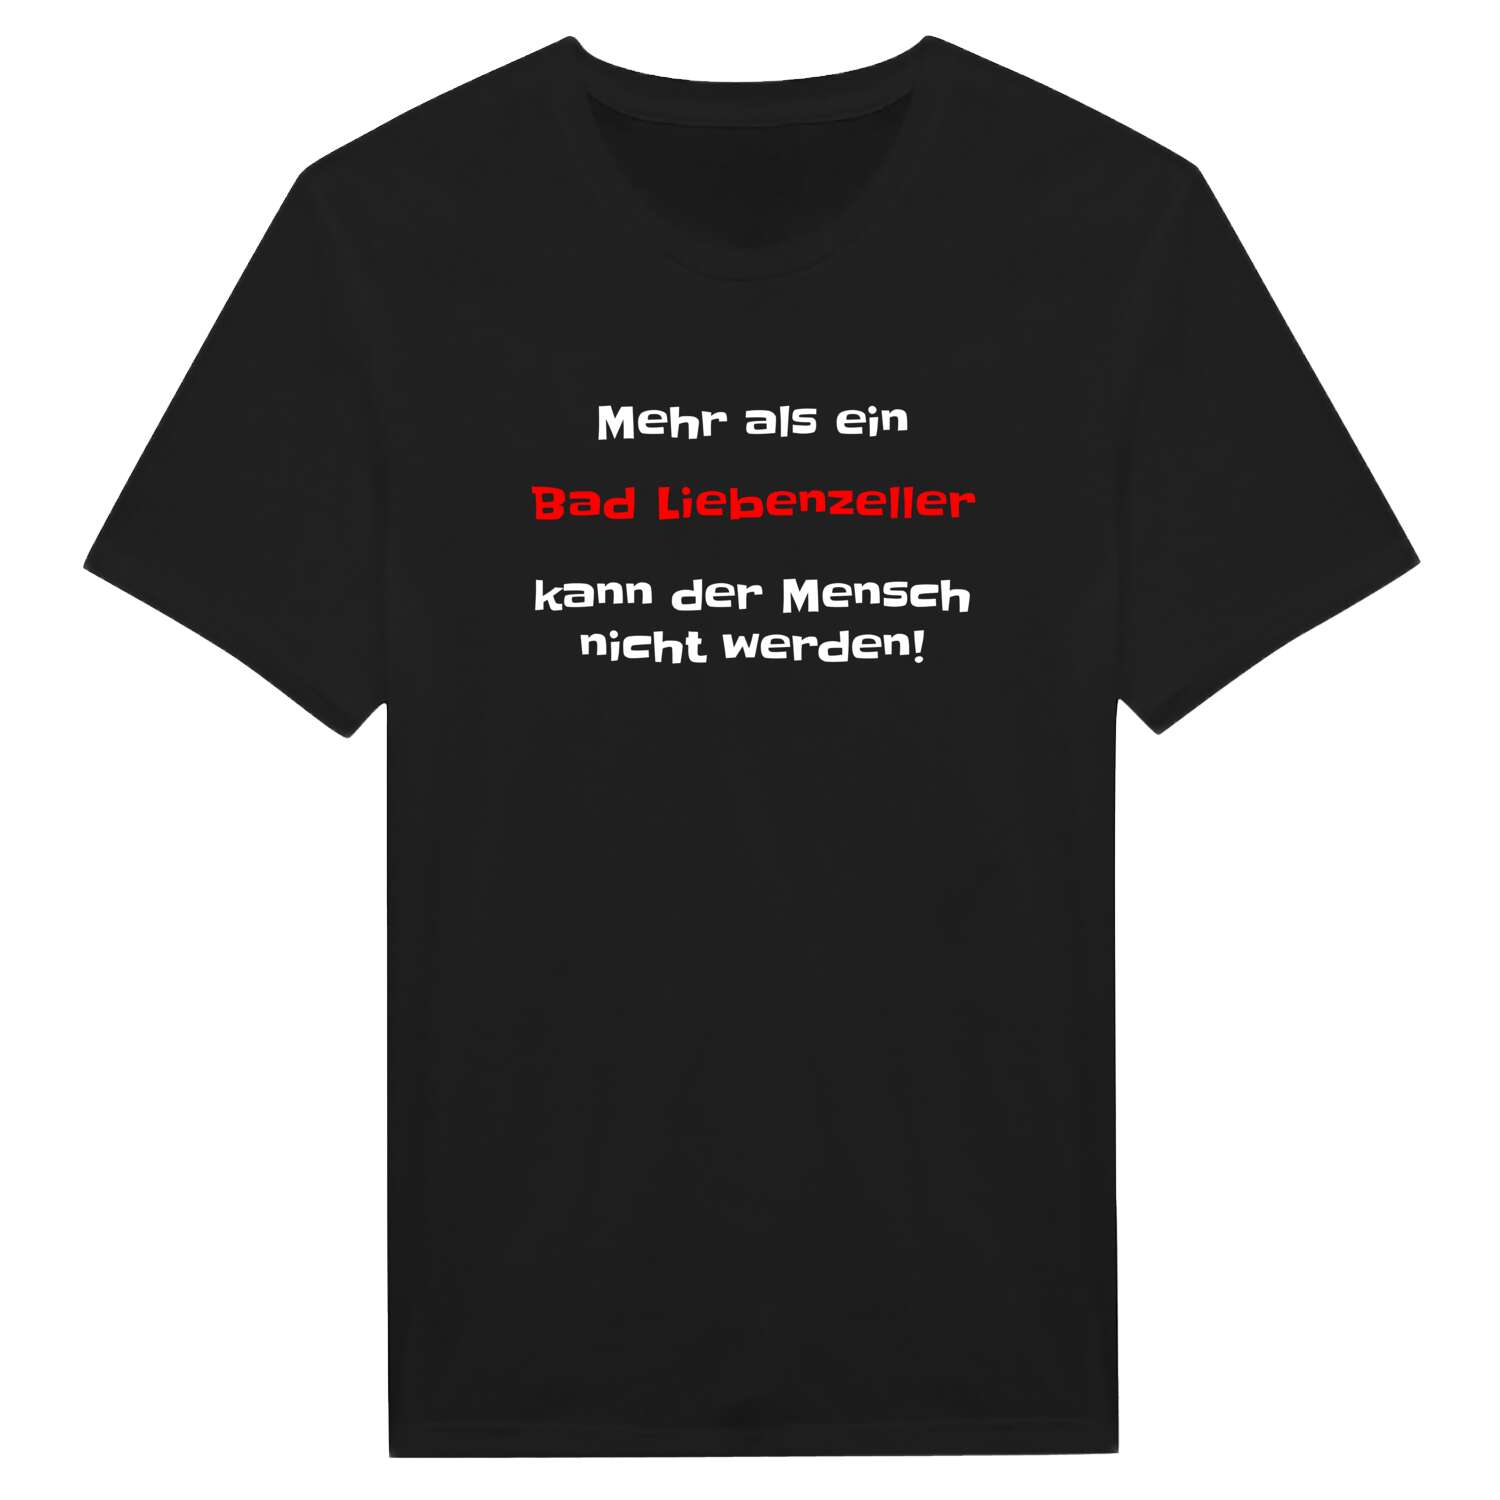 Bad Liebenzell T-Shirt »Mehr als ein«